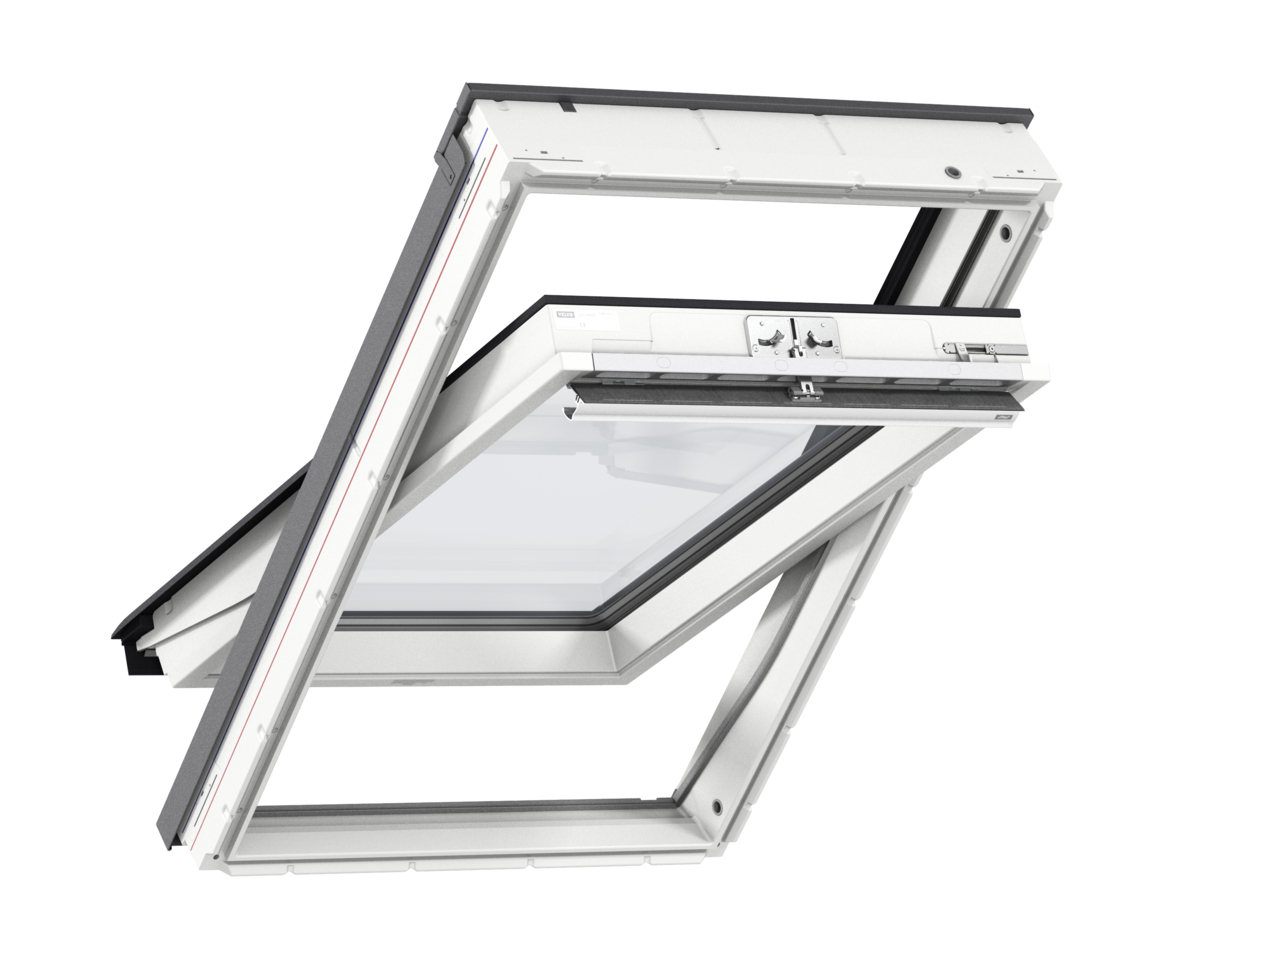 Мансардное двухкамерное белое окно Velux (Велюкс) GLU CK02 0061 55х78 см (ручка сверху), Деревянное мансардное окно в полиуретане с двухкамерным стеклопакетом GLU 0061 CK02 Окно 55*78 см, Velux